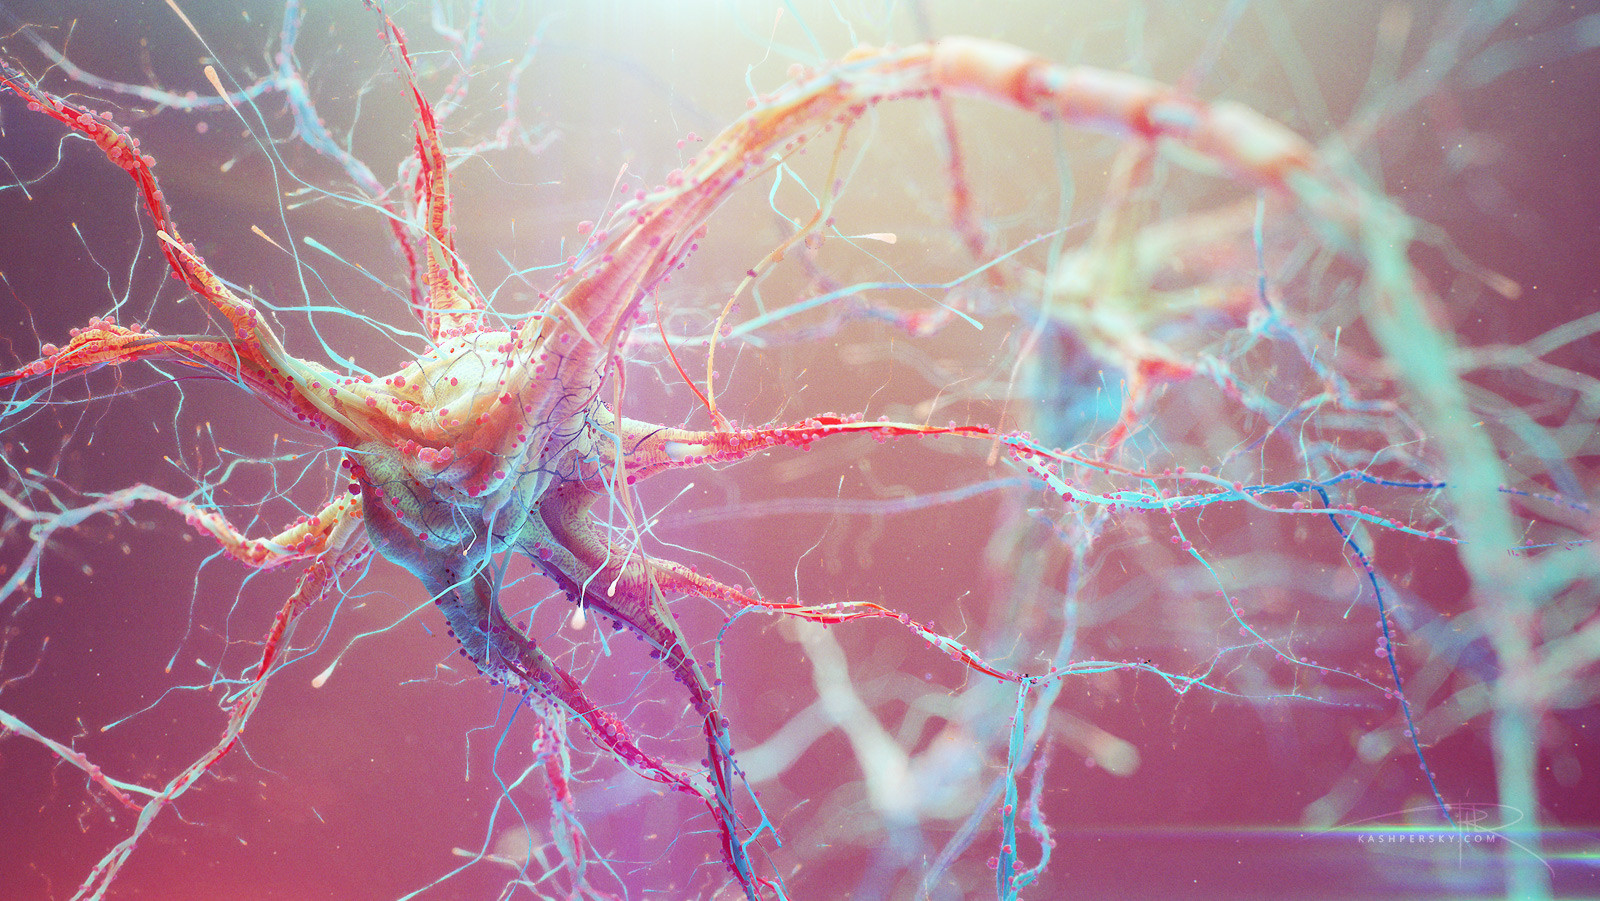 Brain neurons. Нейрон клетка головного мозга. Нейроны и нейронные связи. Нервная система человека Нейрон. Нейроны фон Экономо.